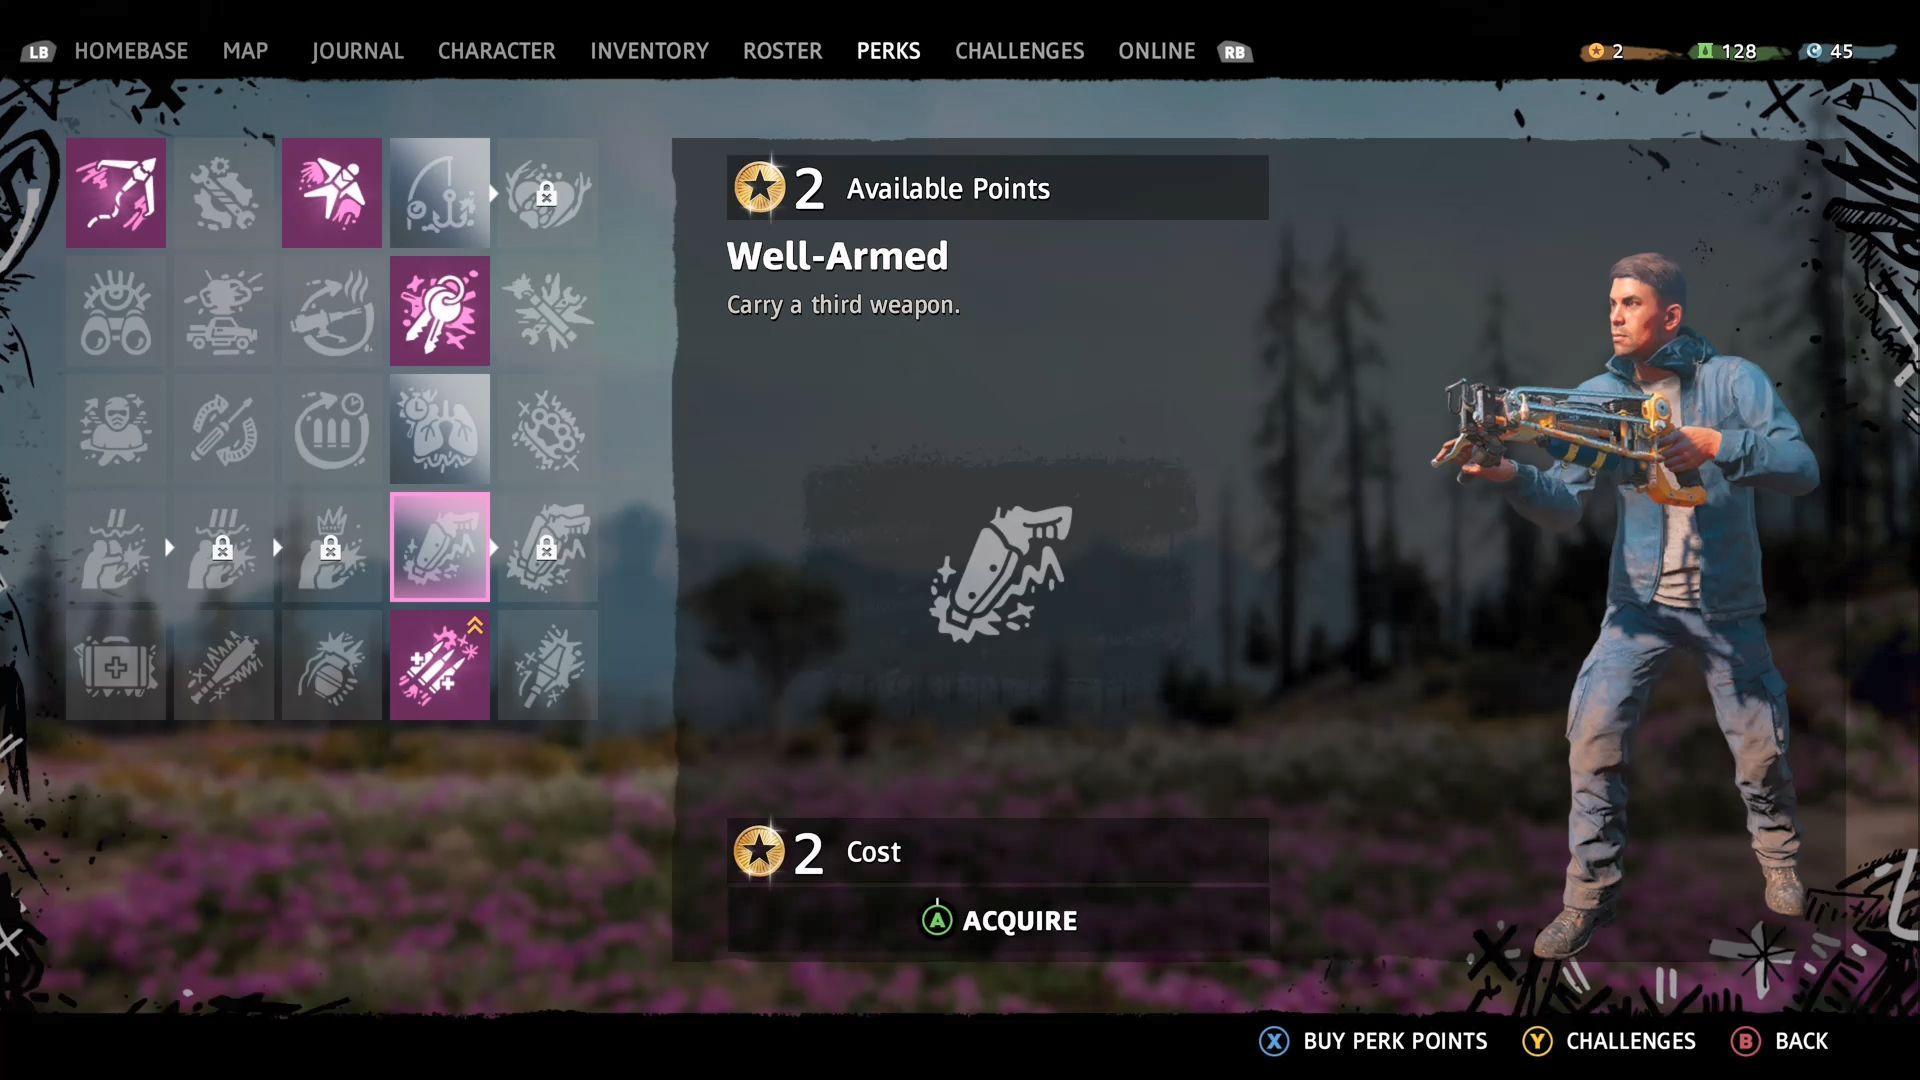 Vývojári Far Cry sa so značkou postupne presúvajú do sveta RPG hier.